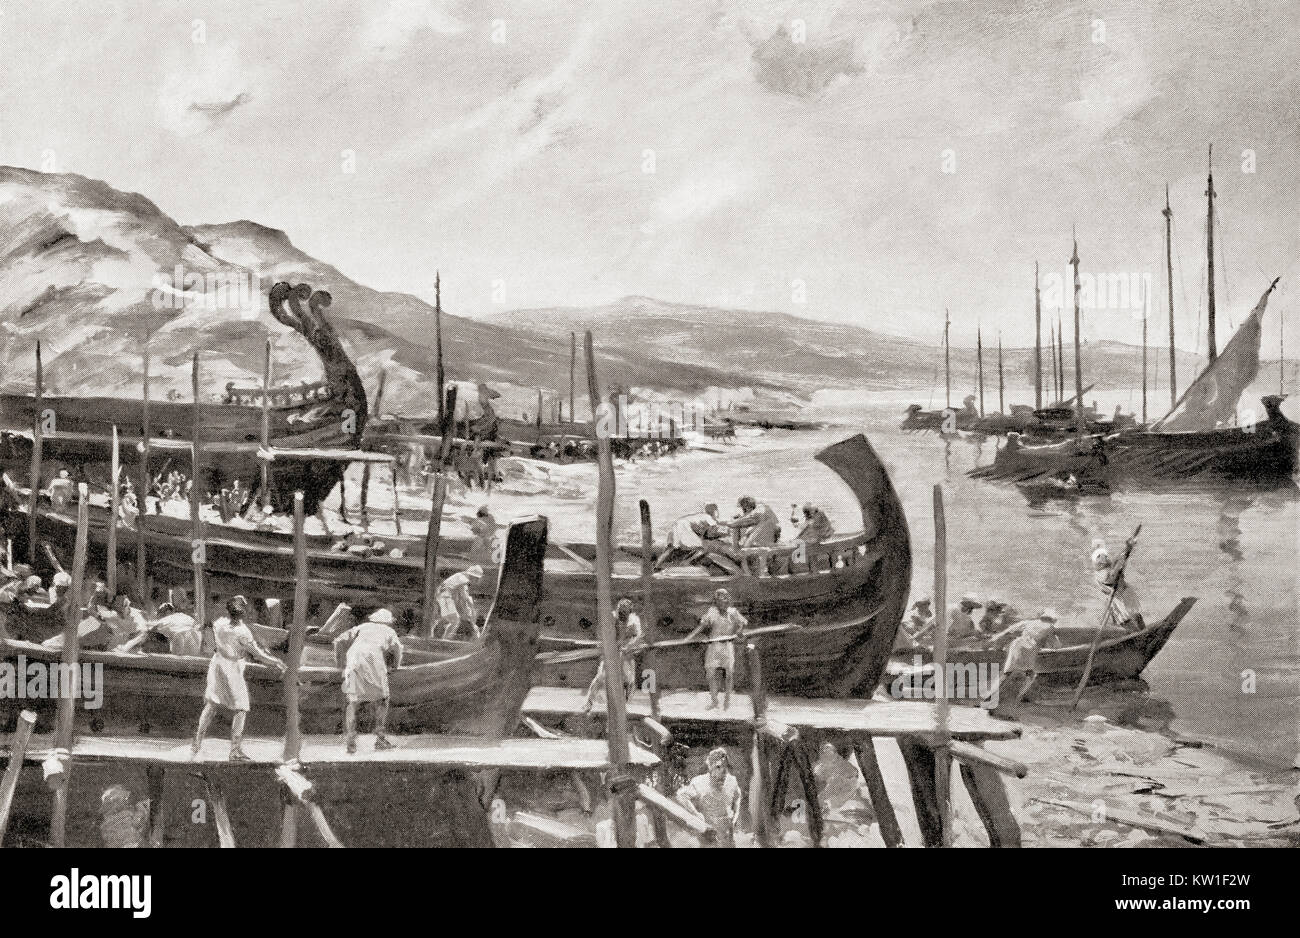 Arbeitnehmer Aufbau einer Flotte von Schiffen, die im antiken Rom. Nach dem Gemälde von Allan Stewart, (1865-1951). Von Hutchinson's Geschichte der Nationen, veröffentlicht 1915. Stockfoto